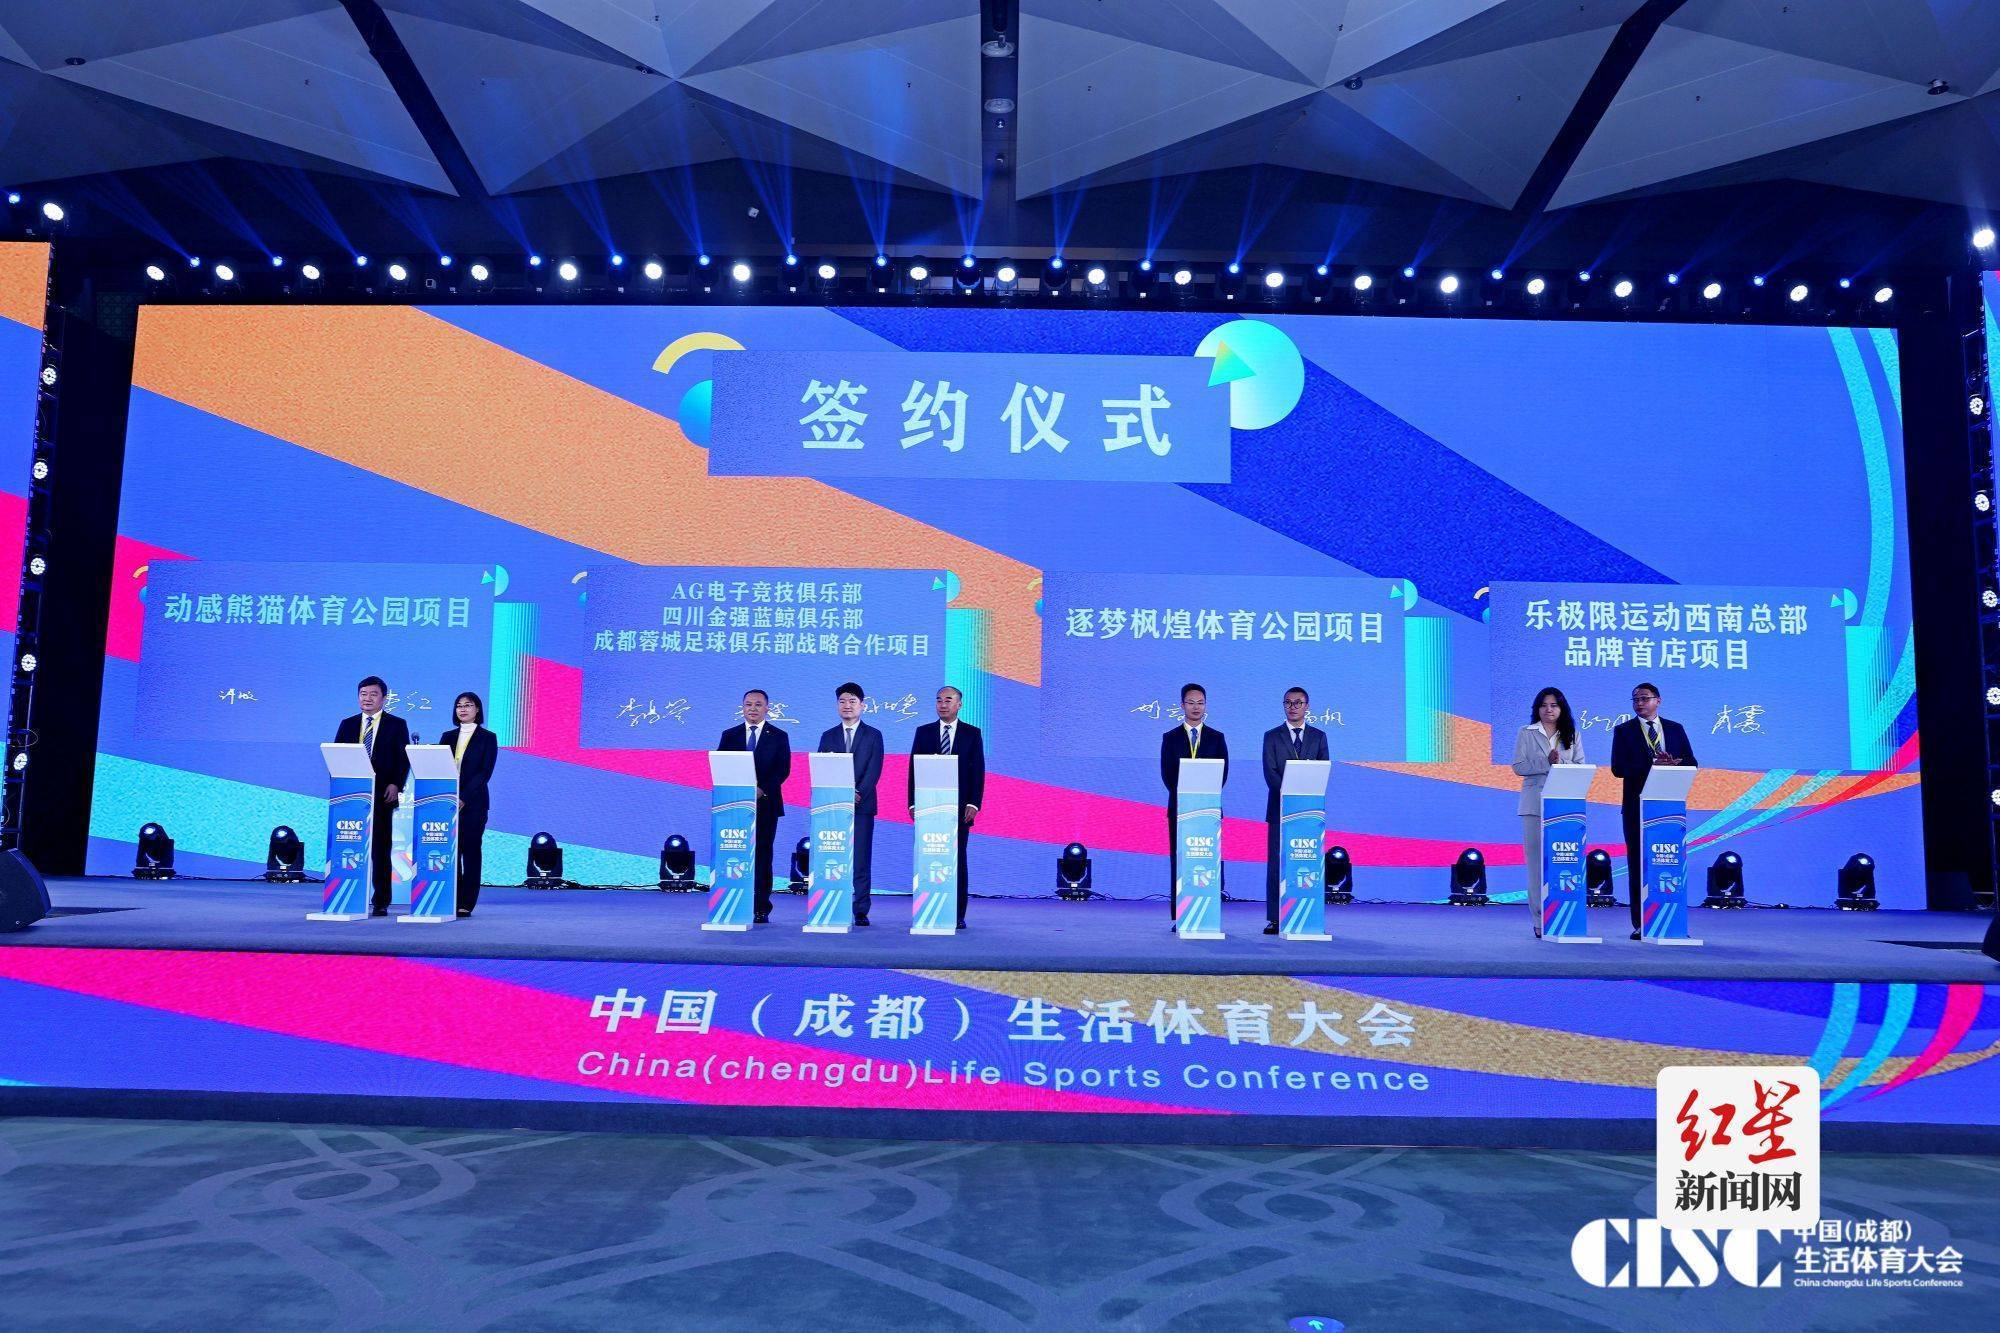 芒果体育“运动让生活更美好” 首届中国生活体育大会在成都开幕(图2)